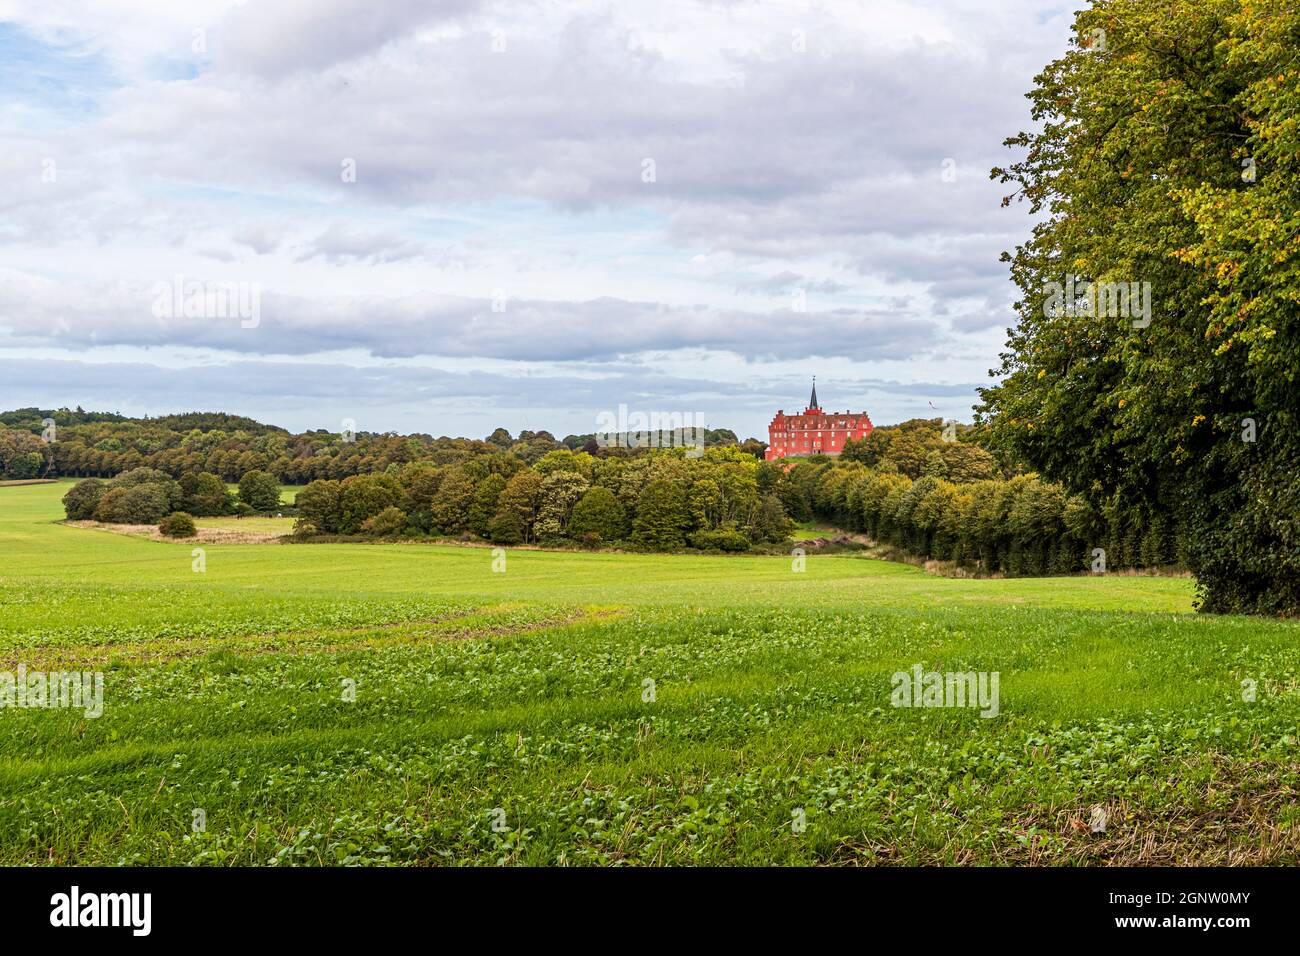 Le château de Tranekær est rouge dans le parc. Le château existe sur ce site depuis le XIIIe siècle et a été utilisé comme résidence officielle par les fonctionnaires du roi danois sur l'île de Langeland, au Danemark Banque D'Images